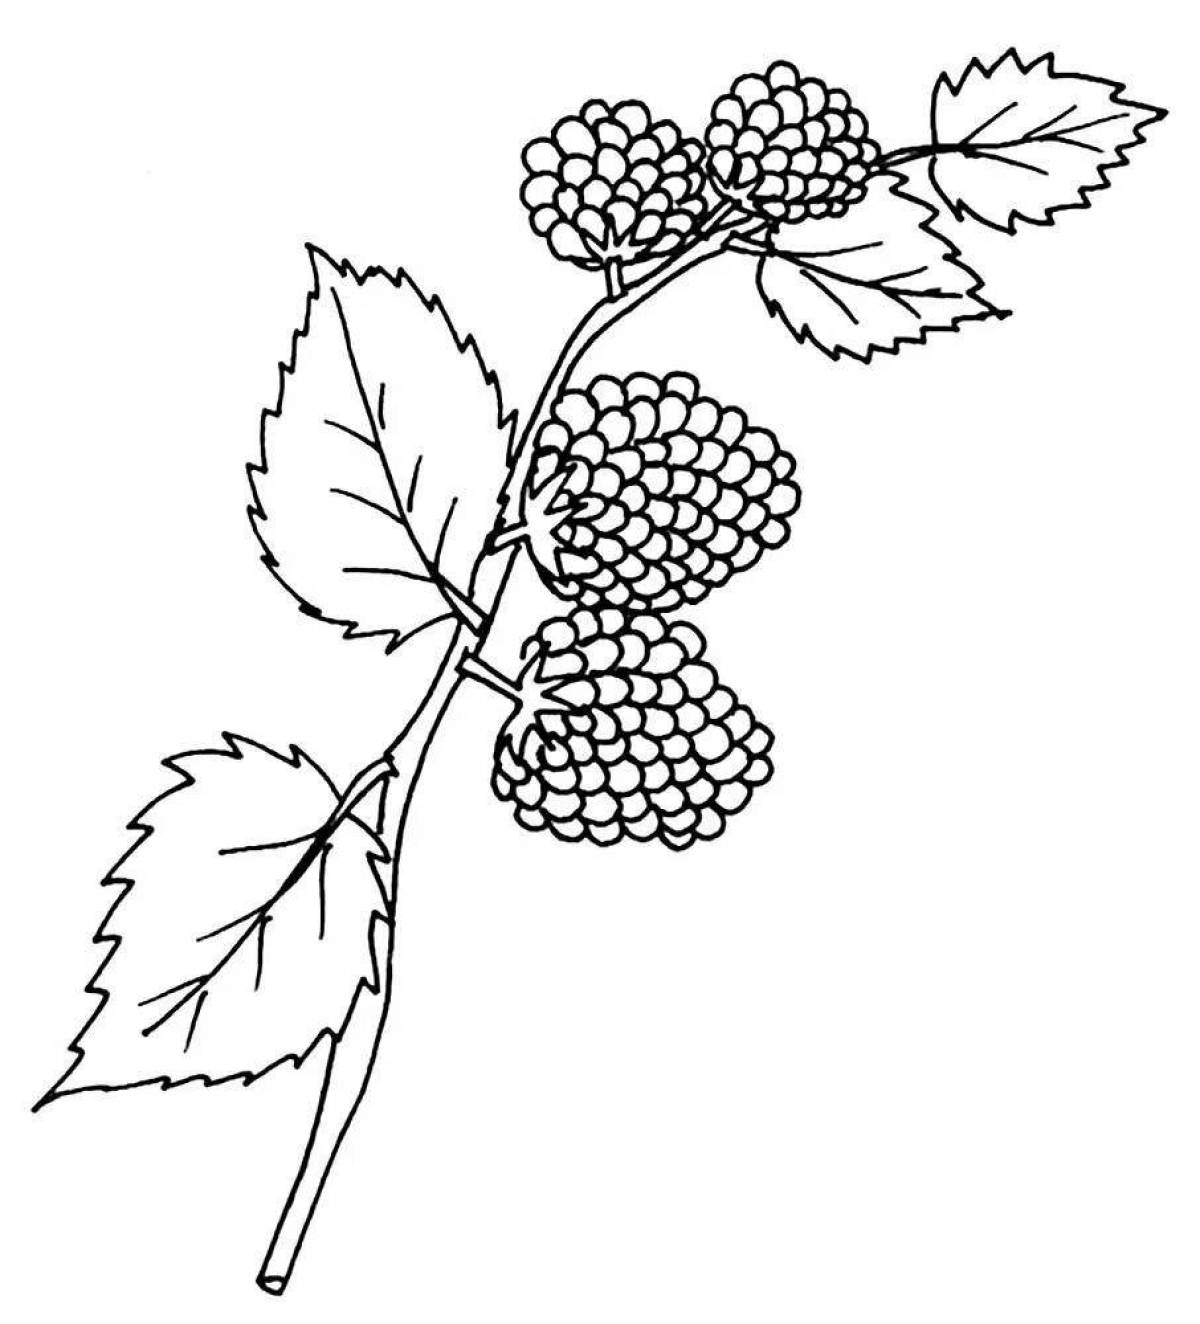 Children's blackberries #5